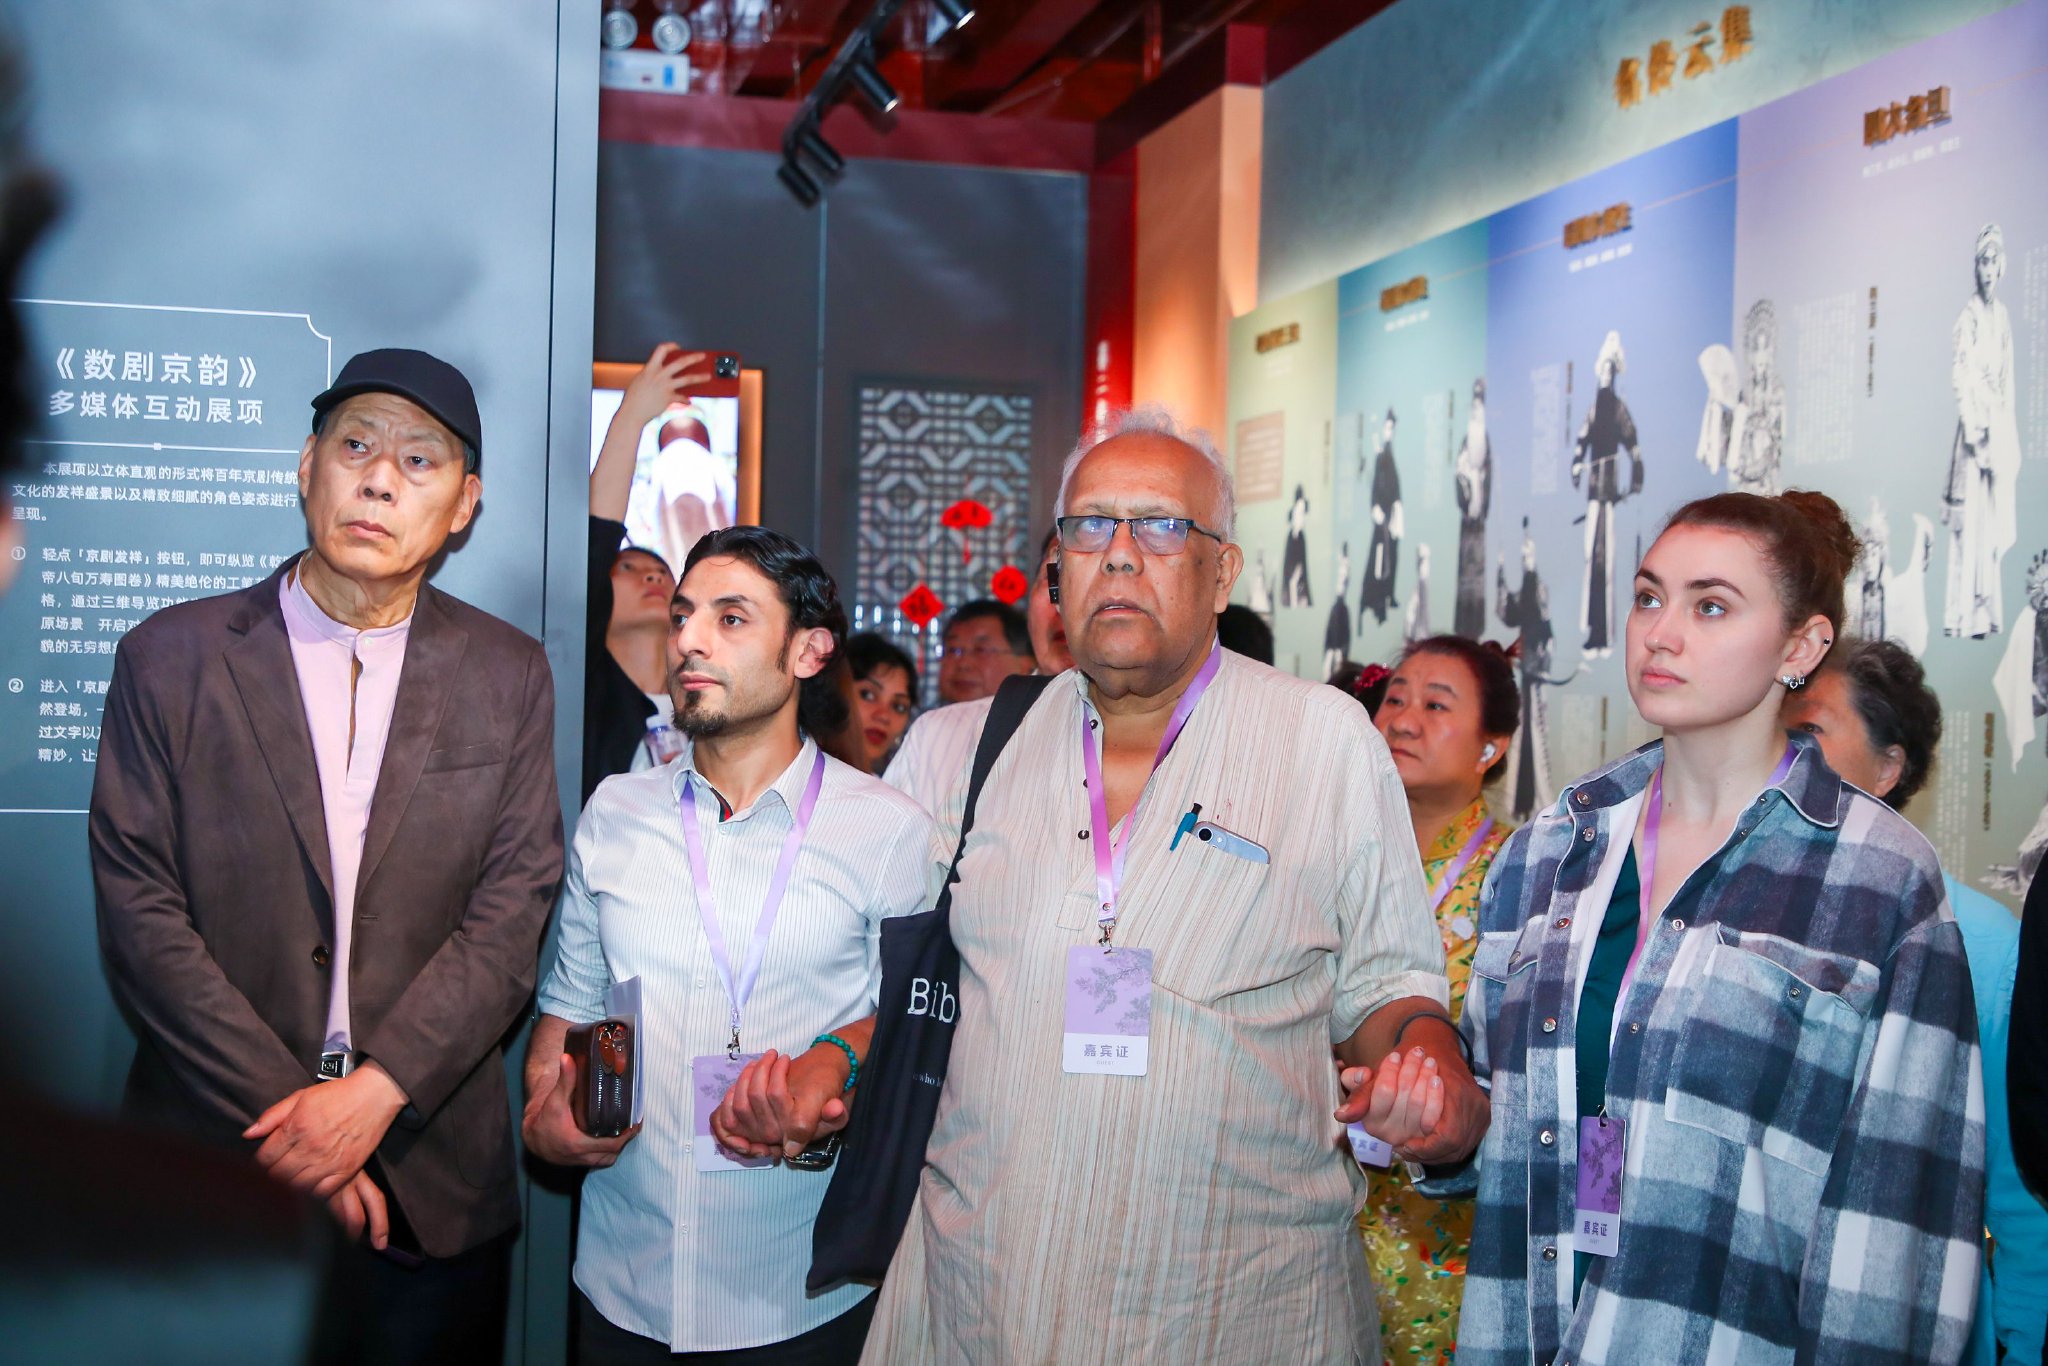 詩人們參觀北京戲曲博物館。新京報記者 薛珺 攝